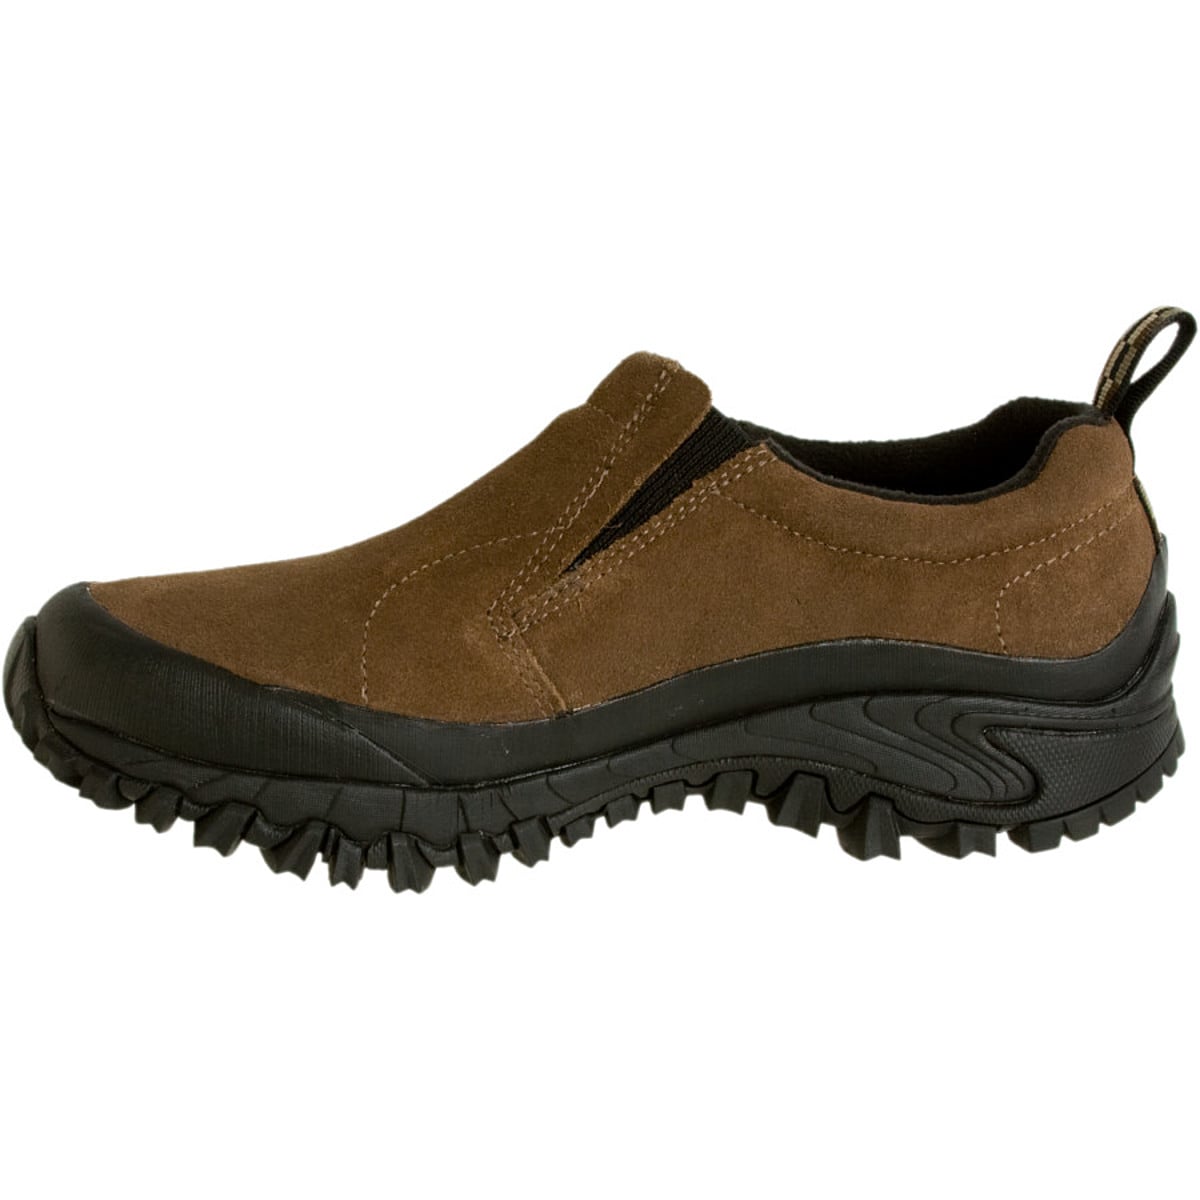 Merrell Shiver Moc Waterproof Shoe - Men's - Footwear